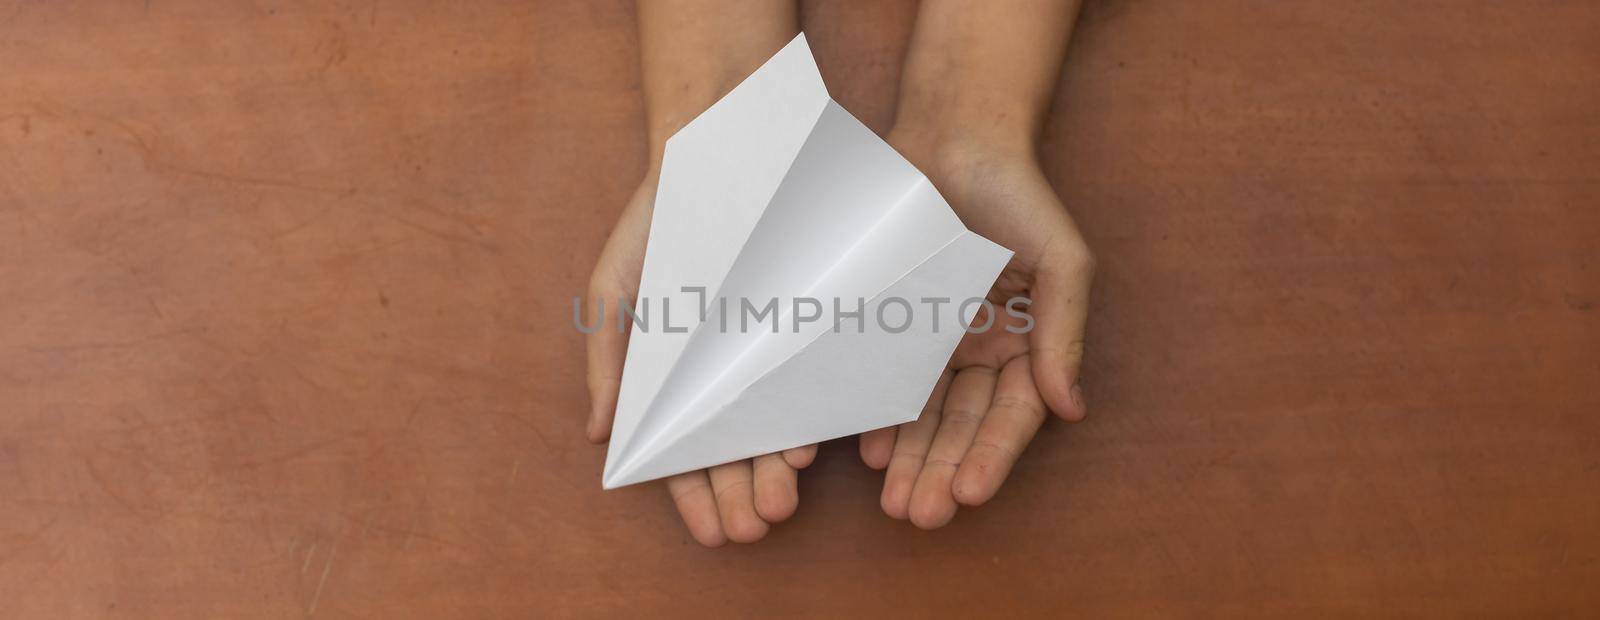 Child's Dream. Child's hand launching white paper airplane.